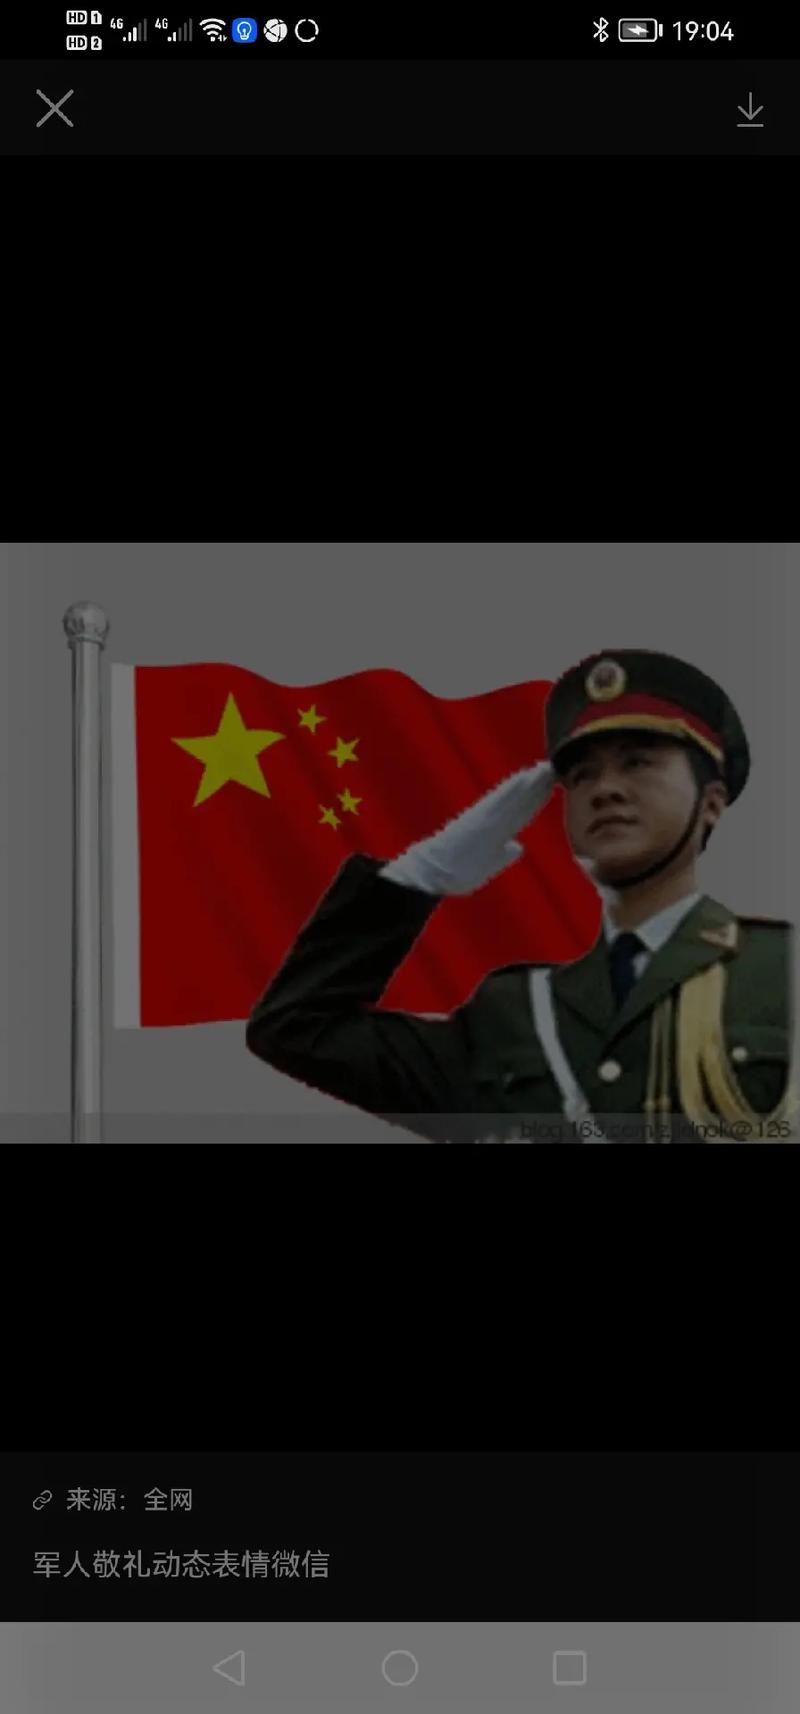 中国人民解放军军礼照片 - 抖音